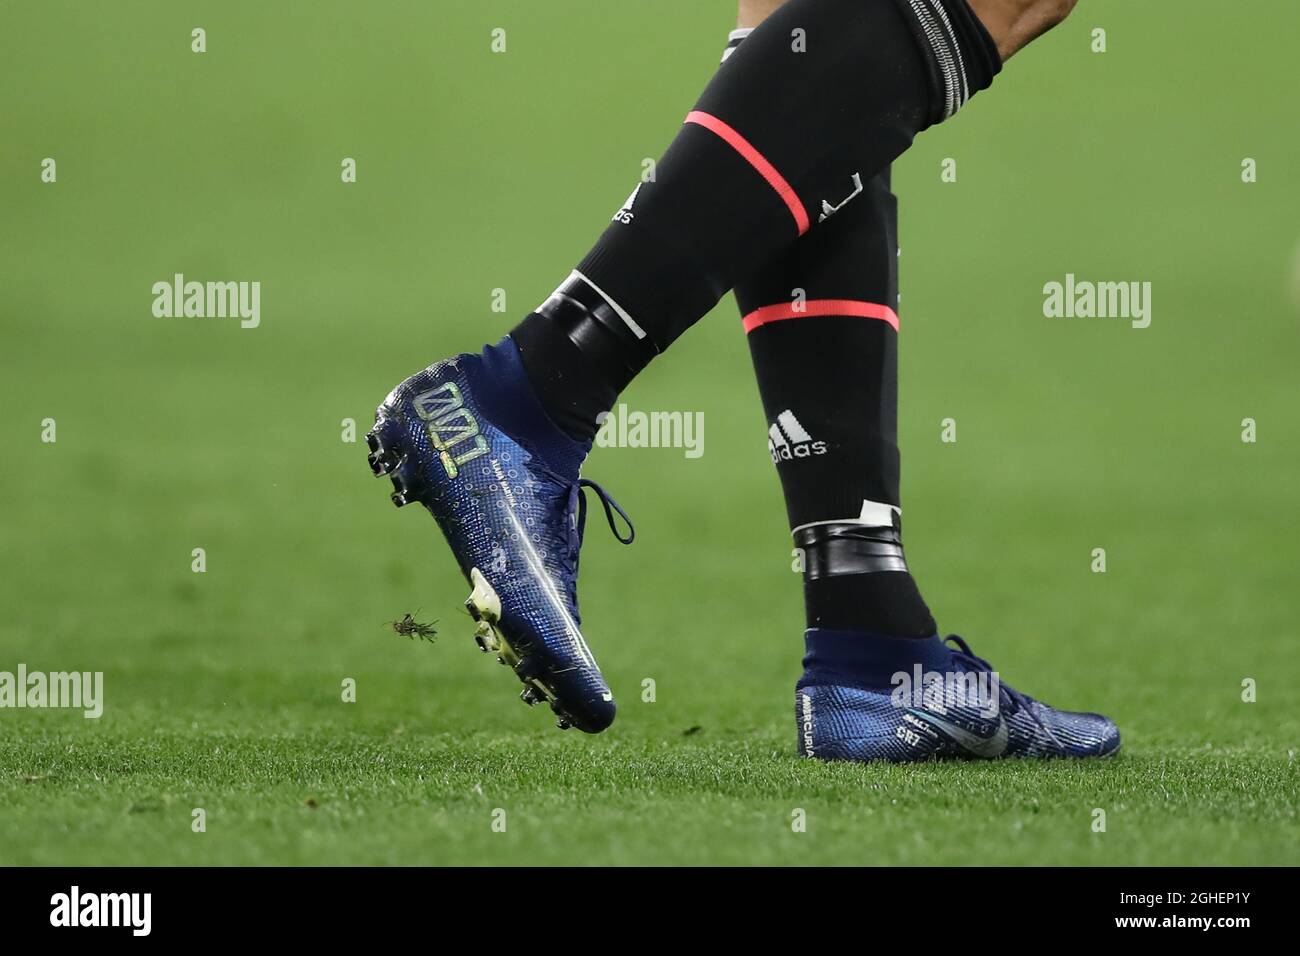 Cristiano de Juventus modela una nueva versión de las botas de fútbol Nike Mercurial durante el partido de la UEFA Champions League en el Juventus Stadium Turín. Fecha de la